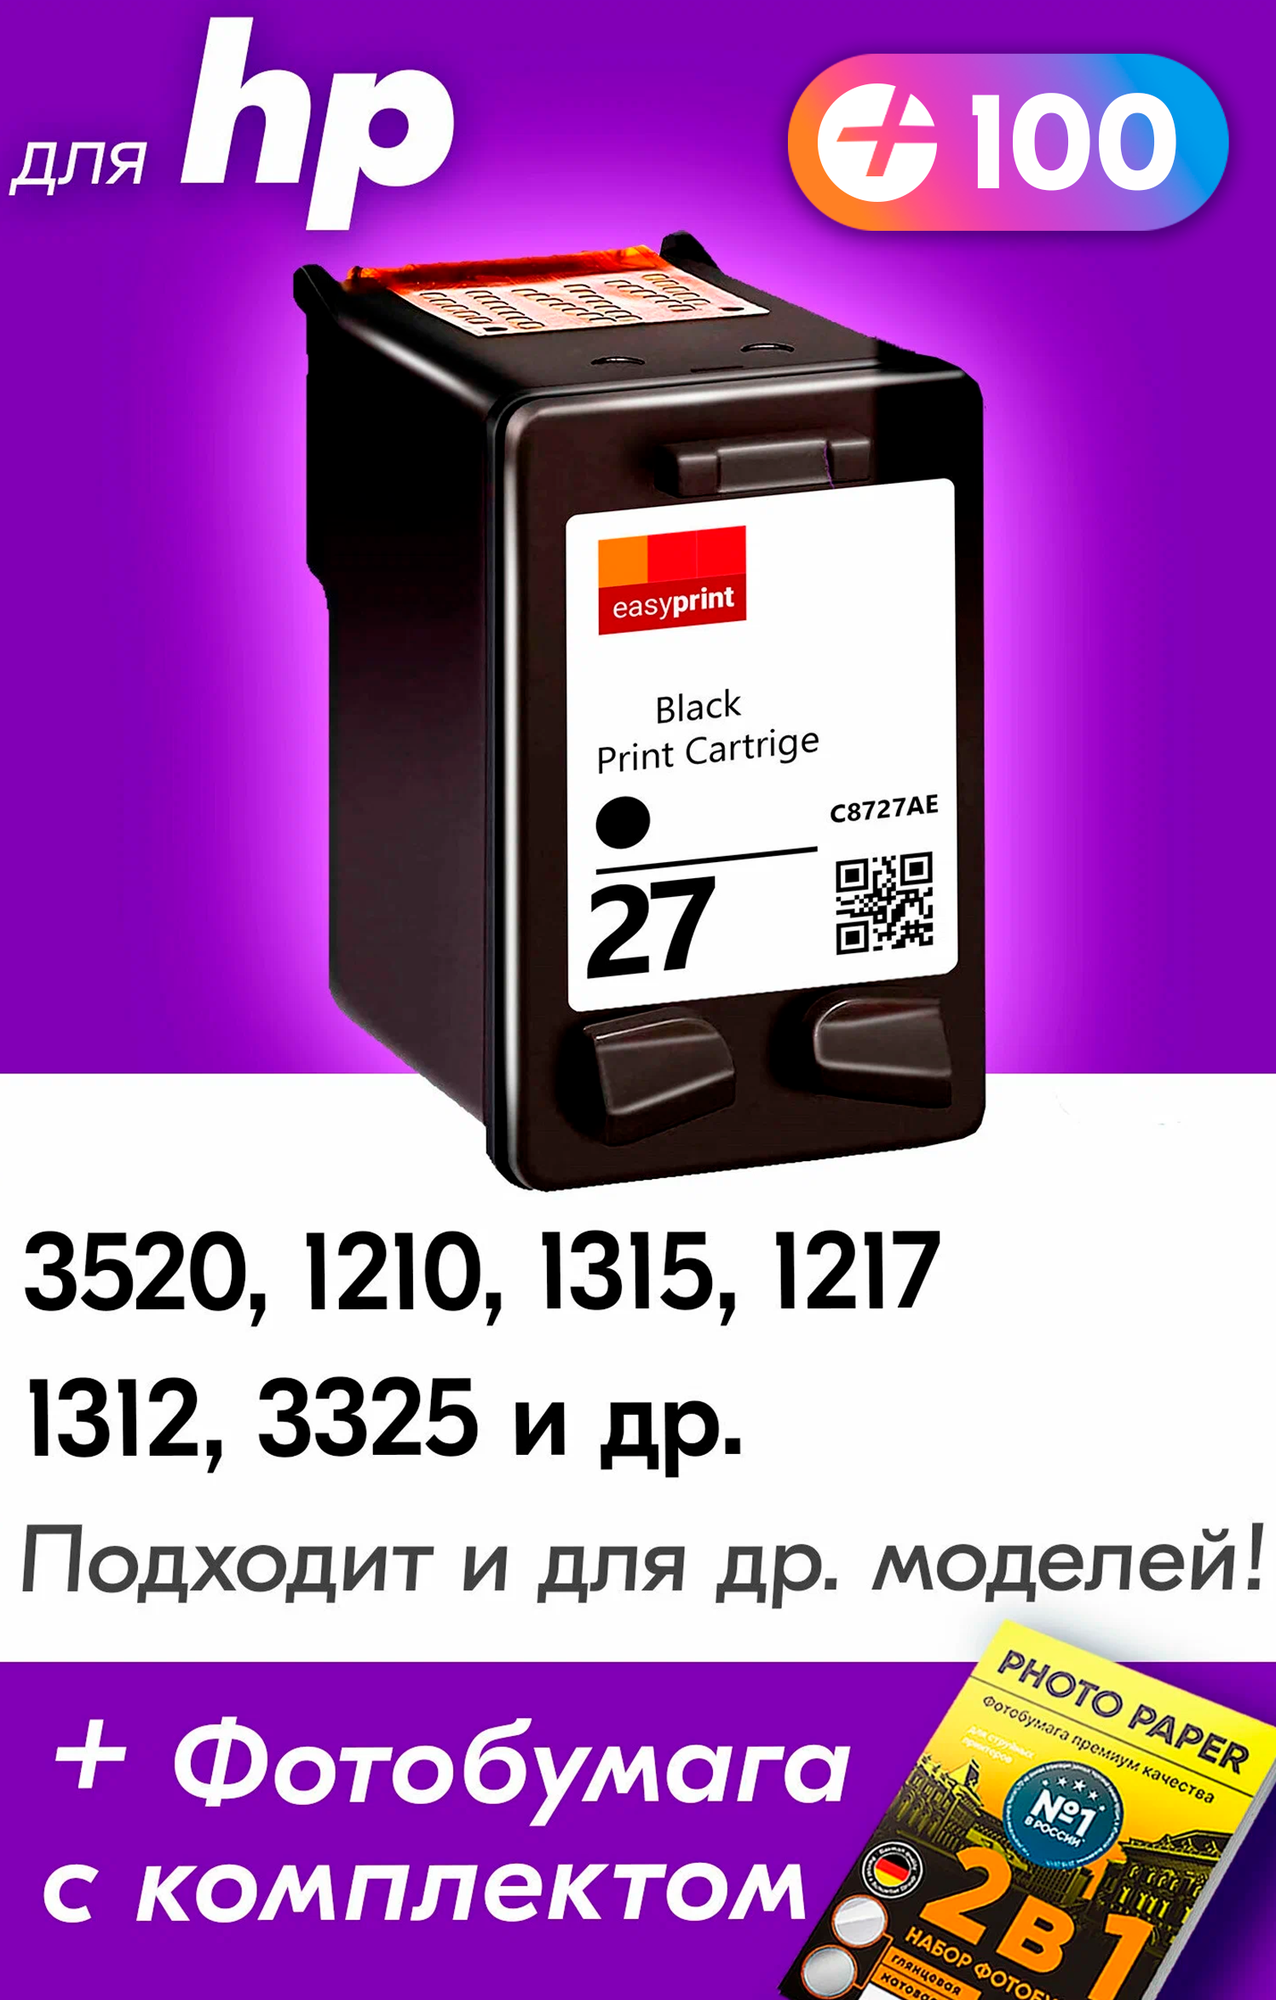 Картридж для HP 27 XL, DeskJet 3520, PSC 1315, 1217, 1210 и др. с чернилами (с краской) для струйного принтера, Черный (Black), 1 шт.